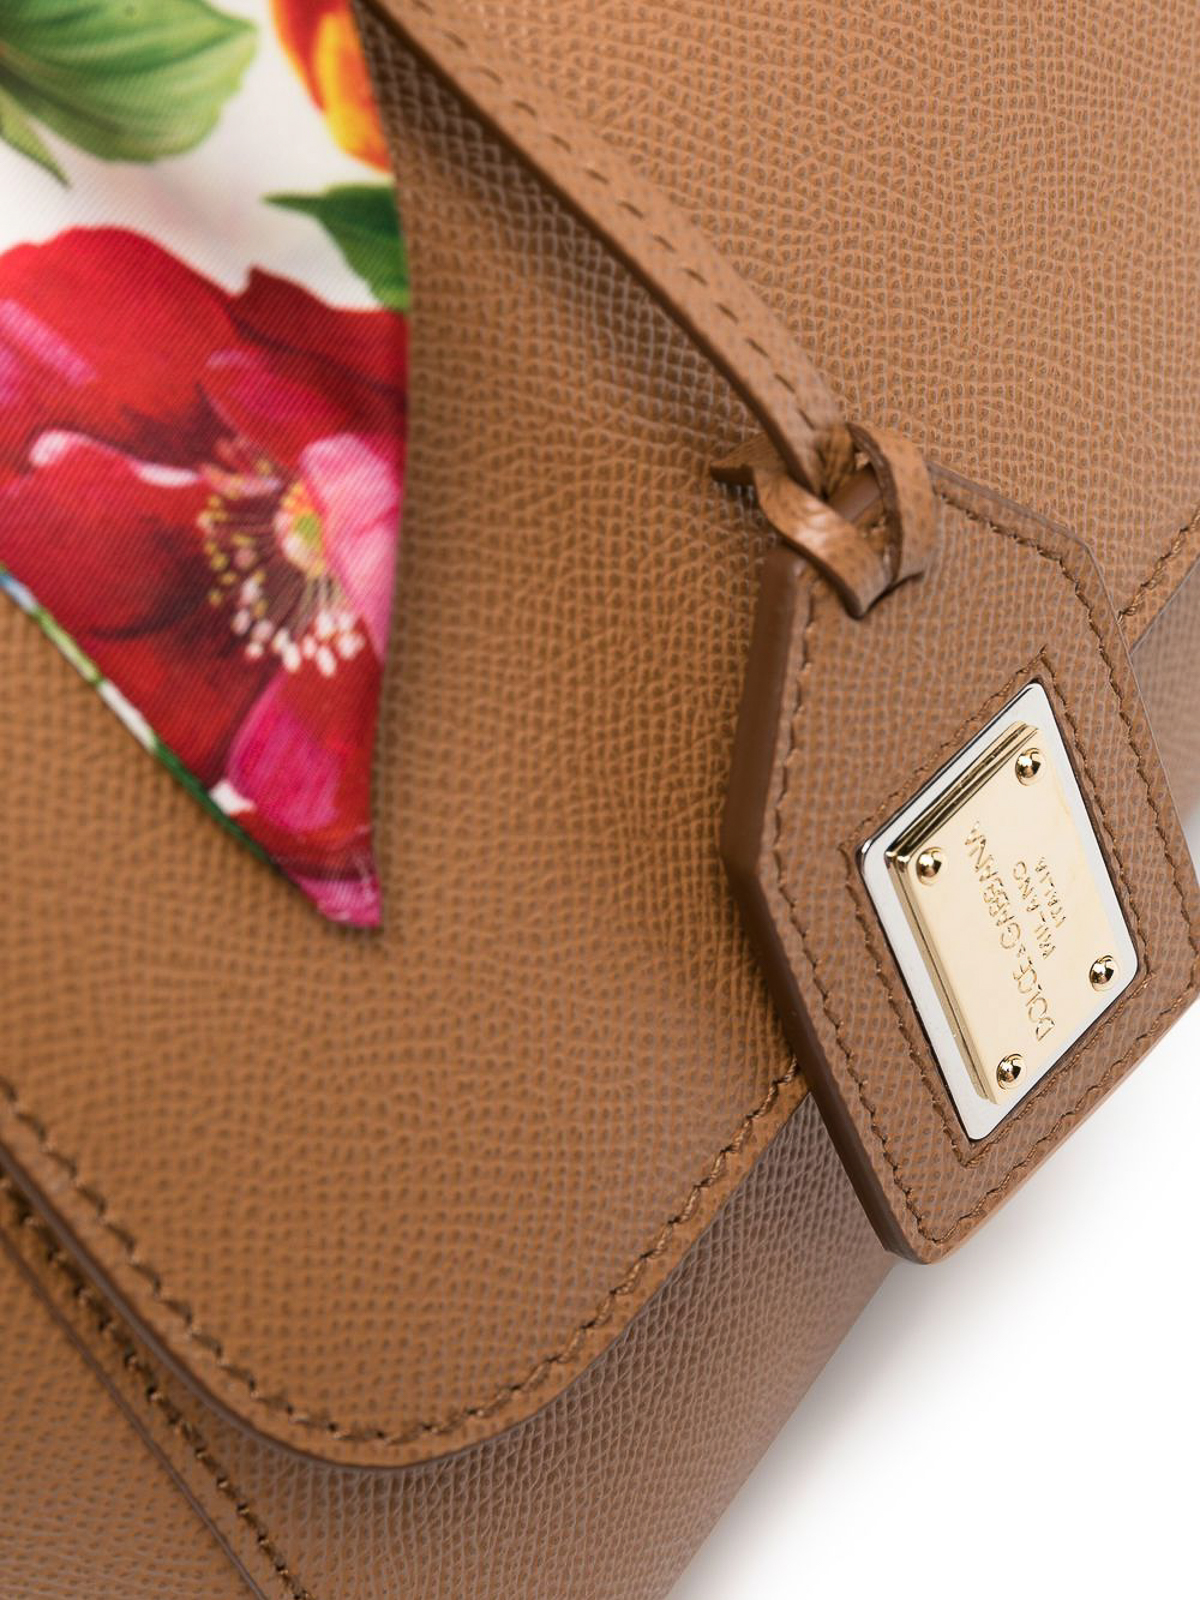 Dolce & Gabbana 'sicily' Shoulder Bag in Brown